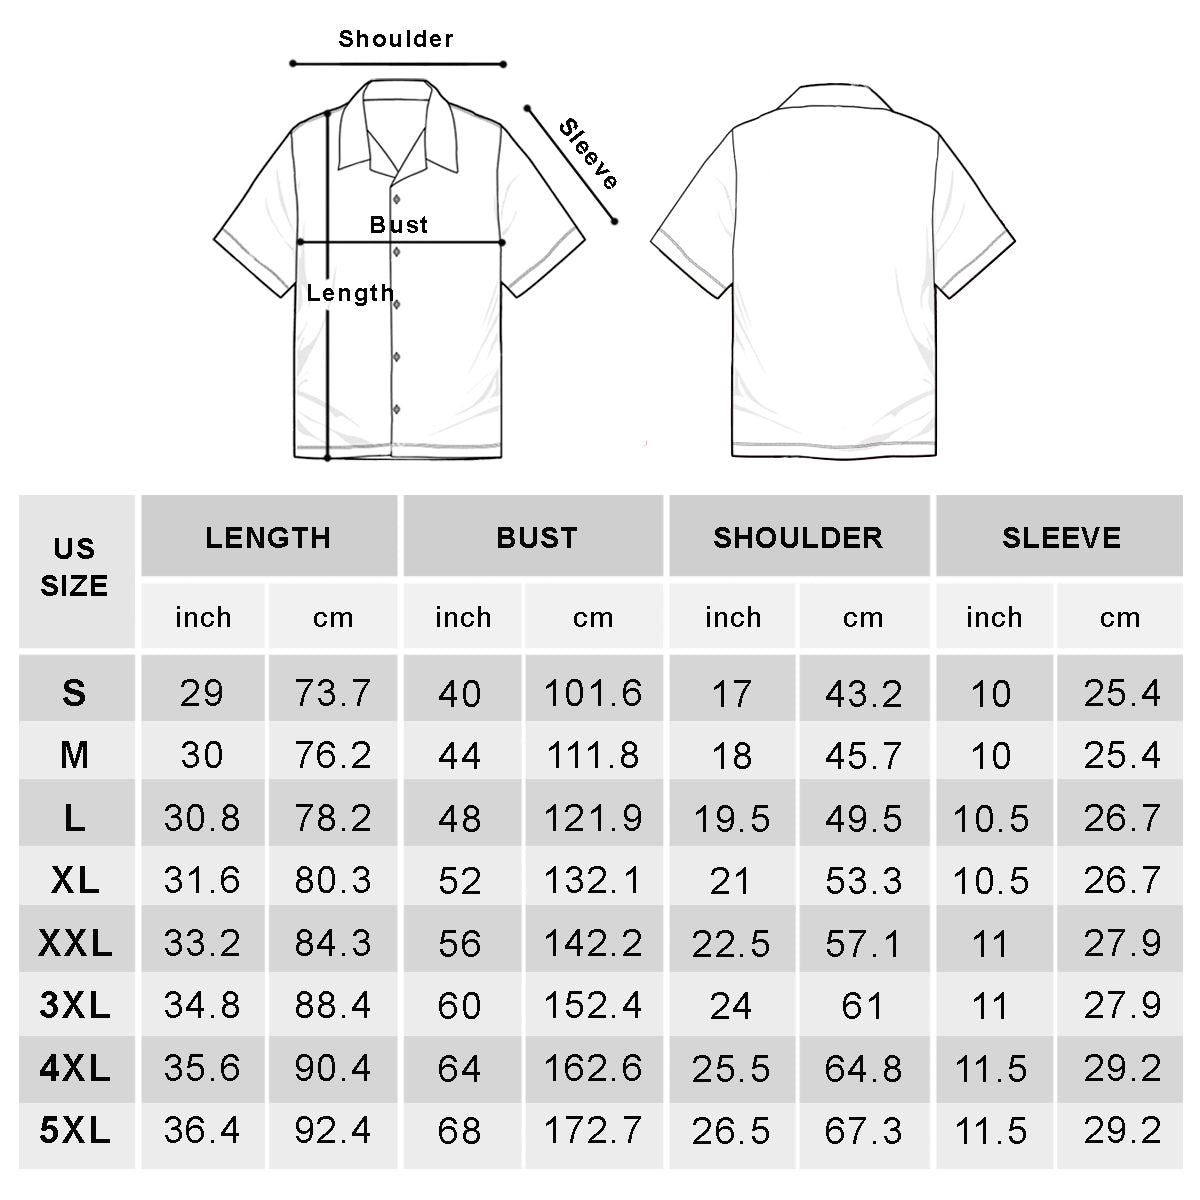 Labrador - Hawaiian Shirt V1